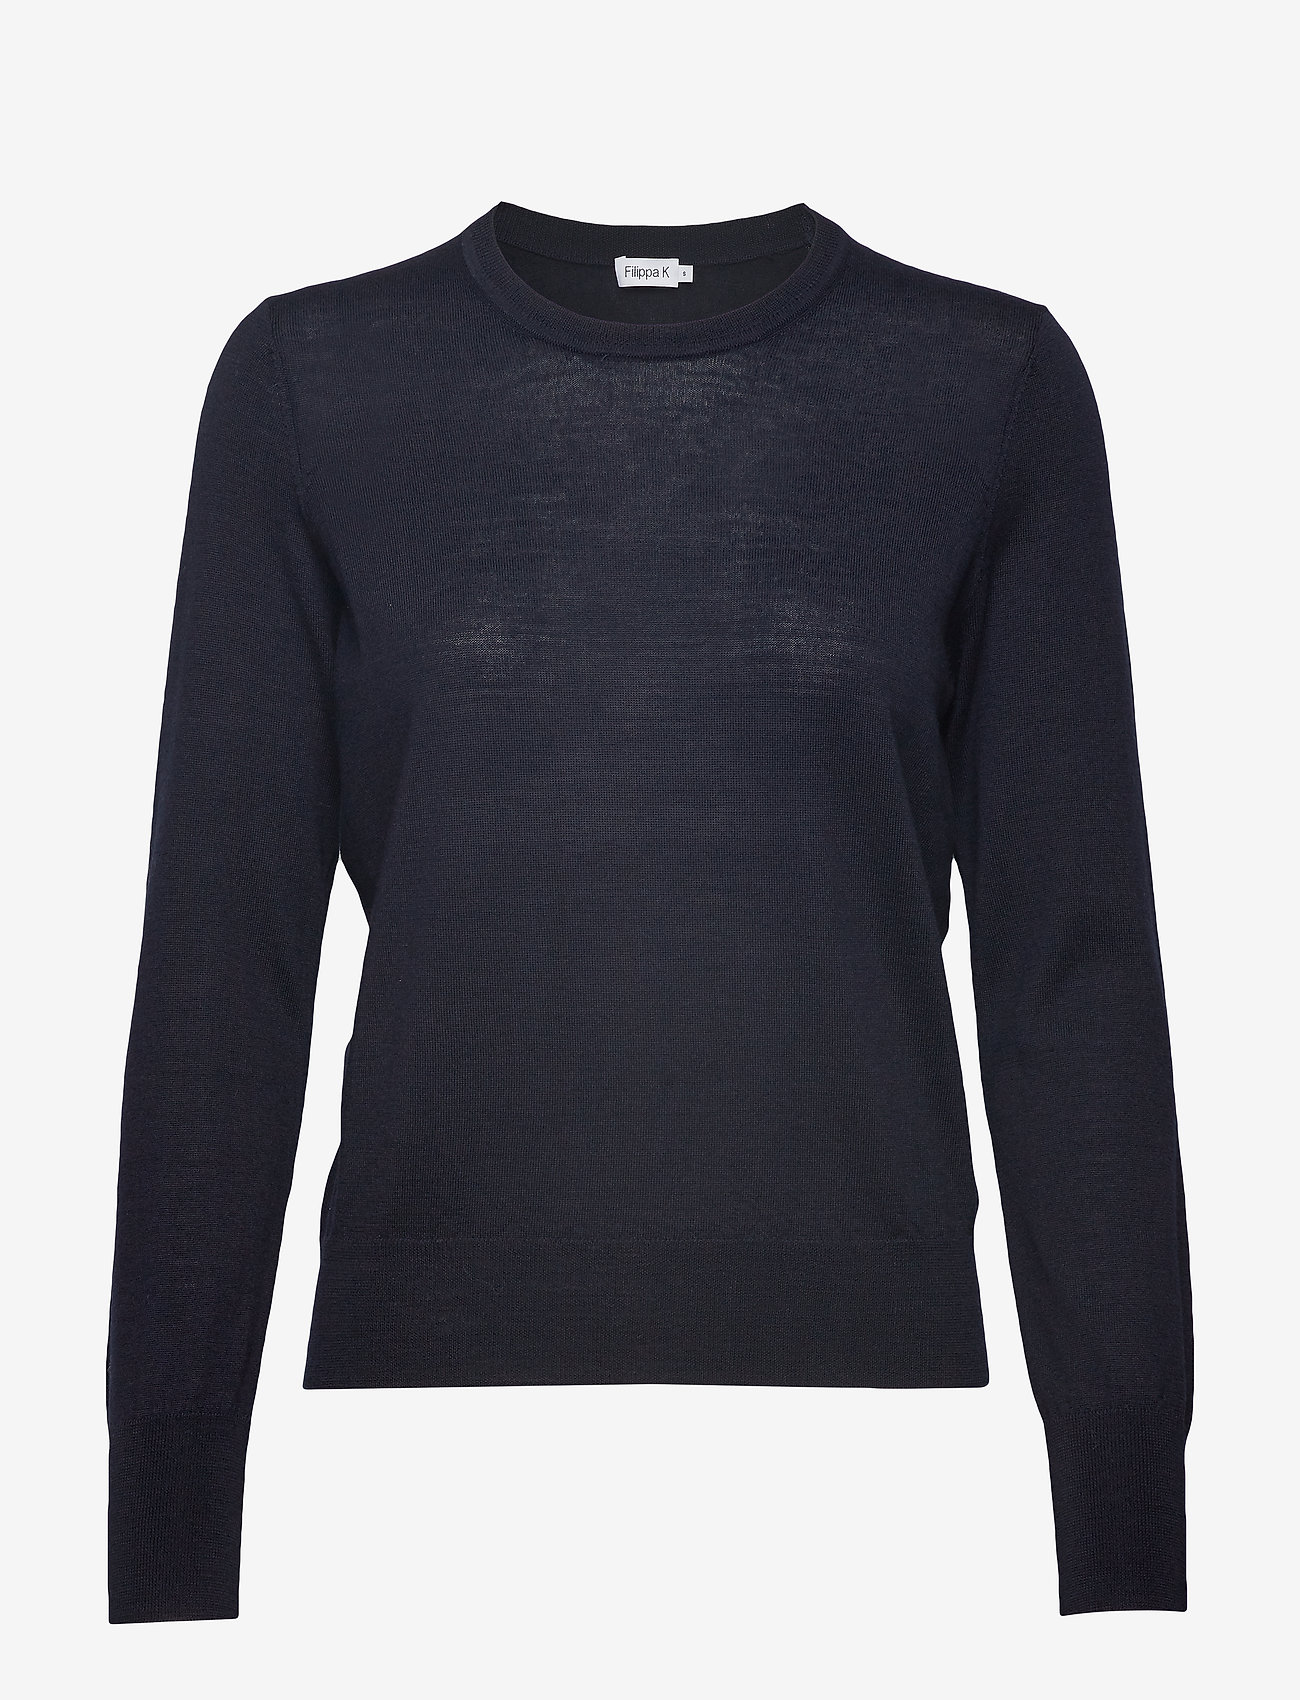 Filippa K - Merino R-neck Sweater - pullover - navy - 0